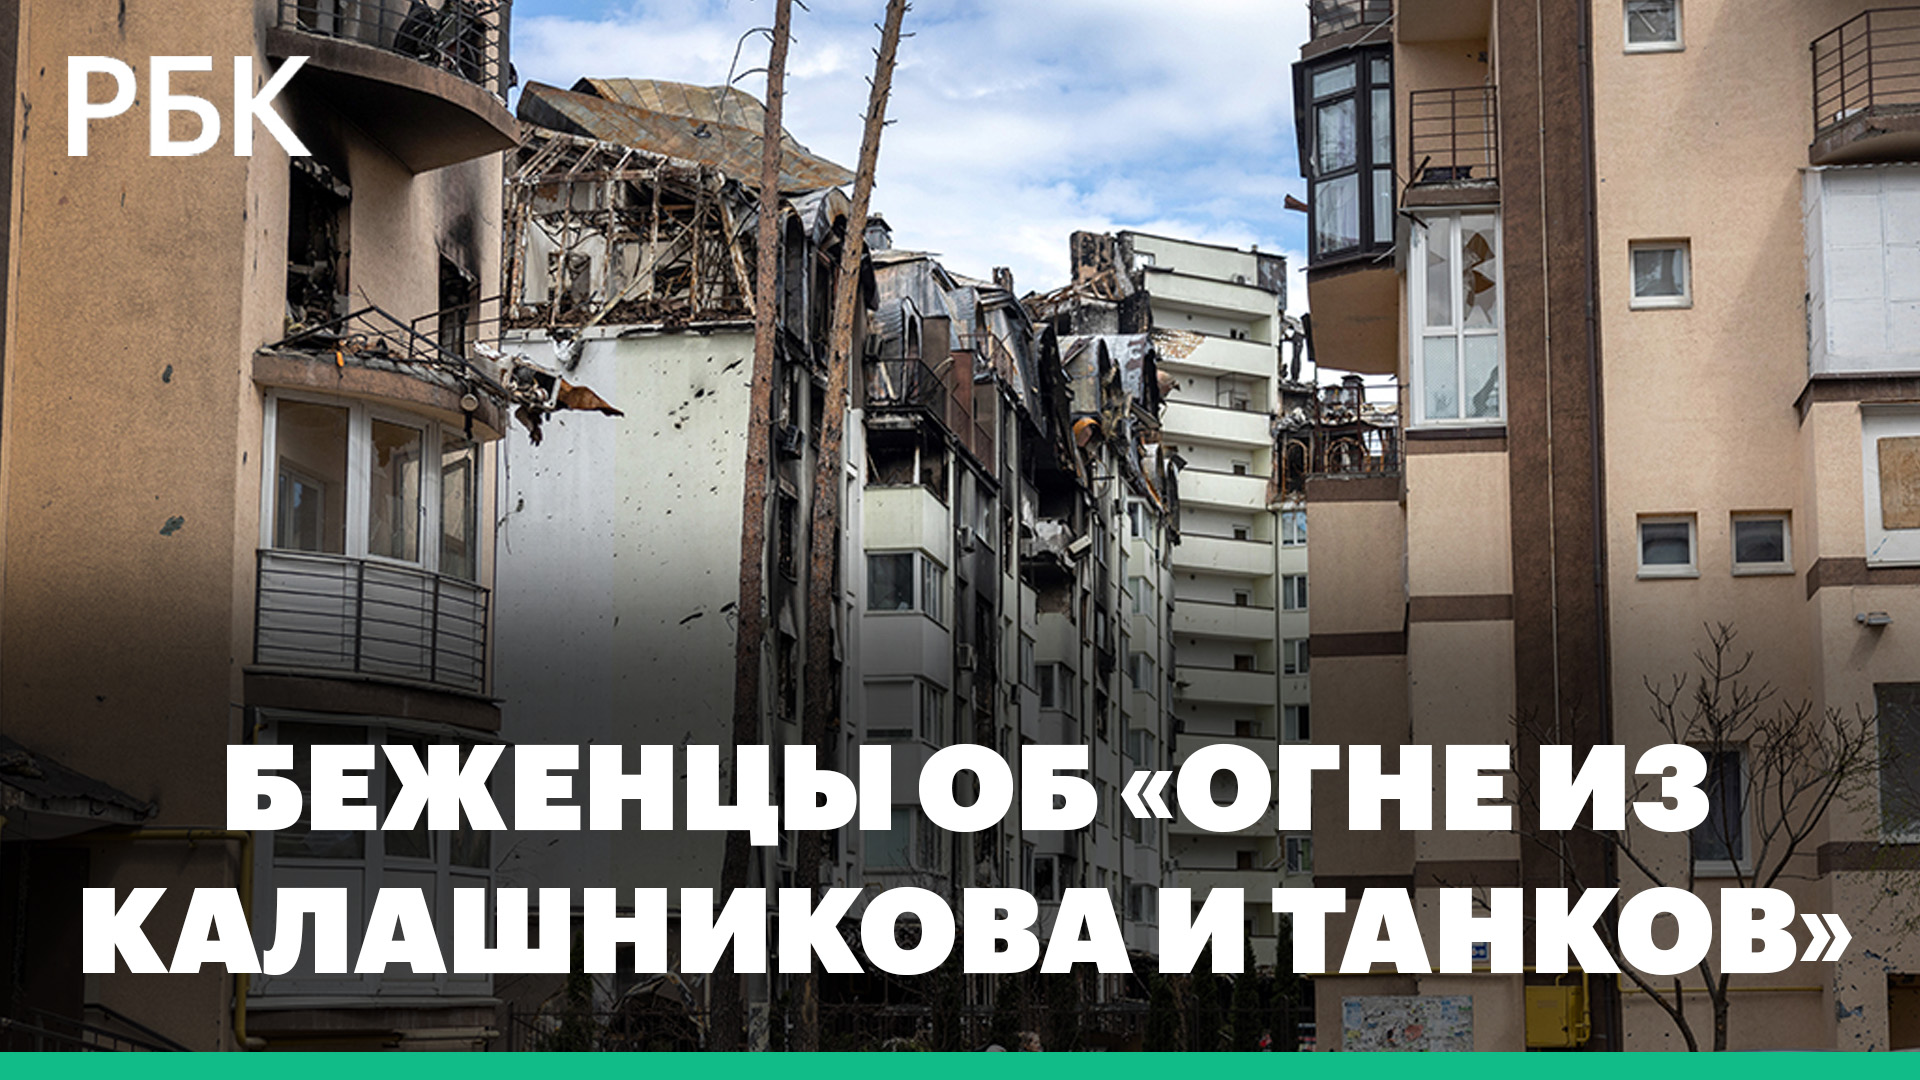 Попавшие под обстрел ВСУ беженцы из Харьковской области рассказали об «огне из Калашникова и танков»